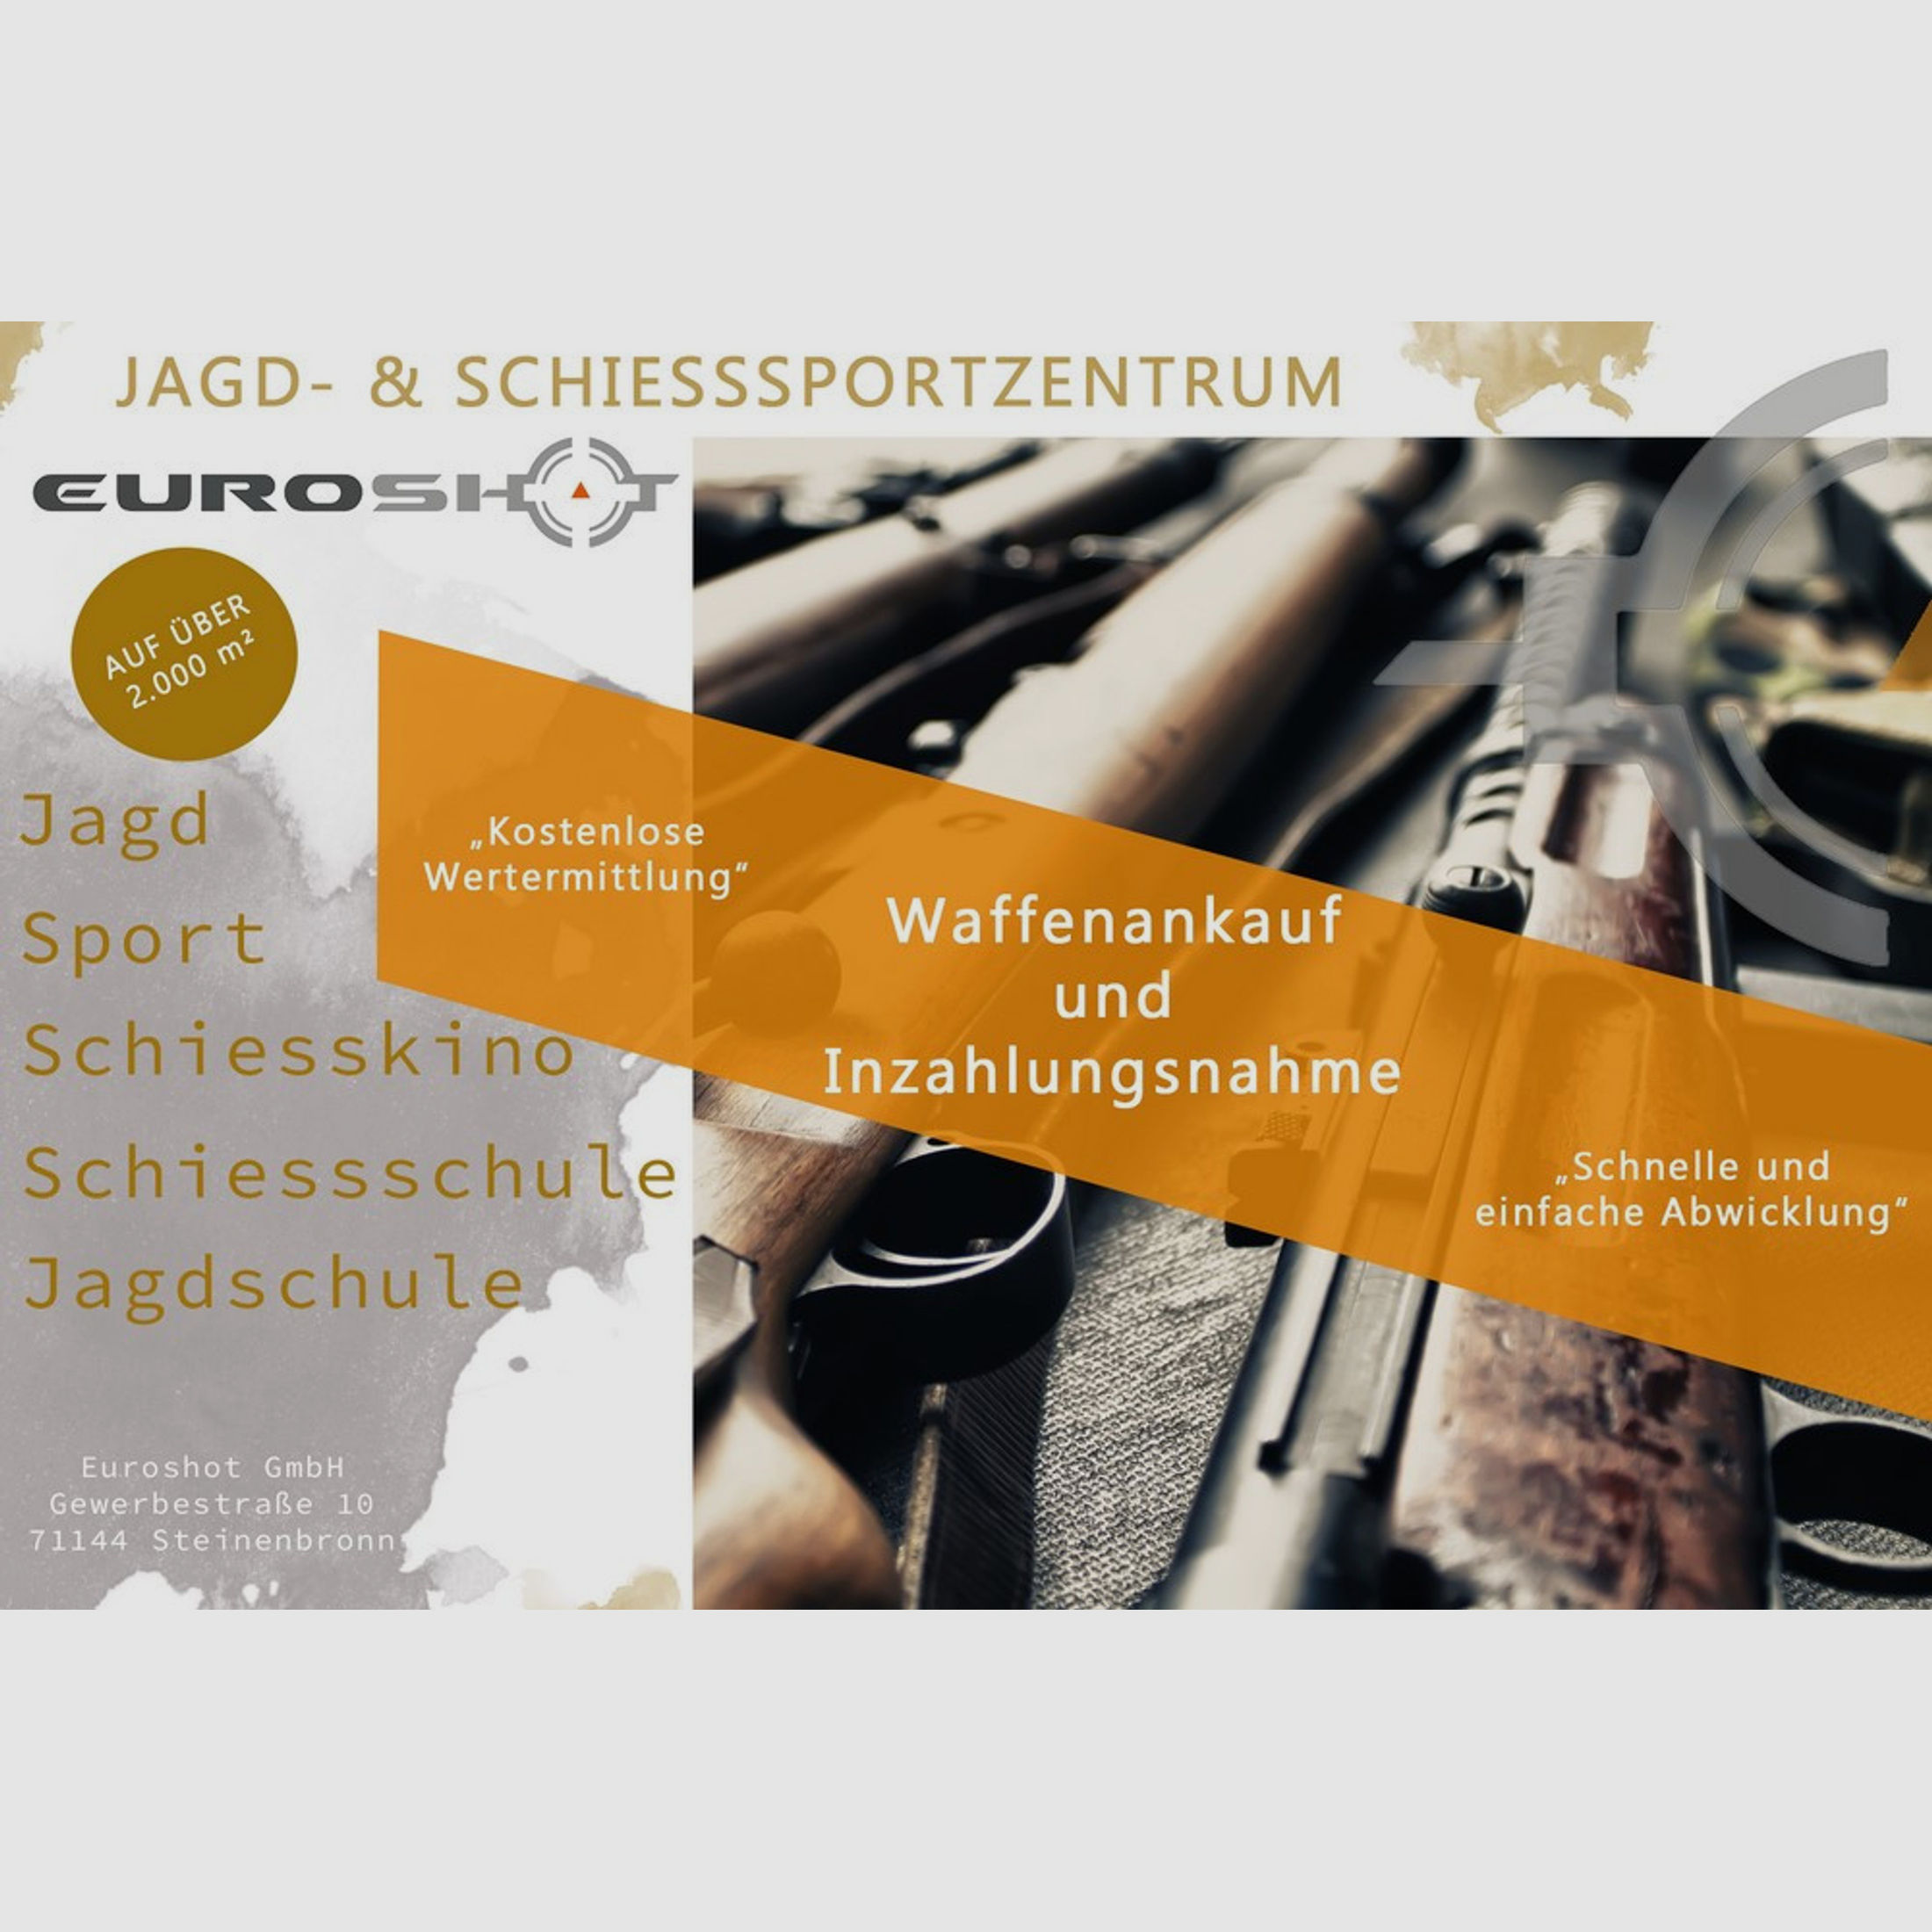 Deutsche Waffen- und Munitions 08 9mmLuger Pistole